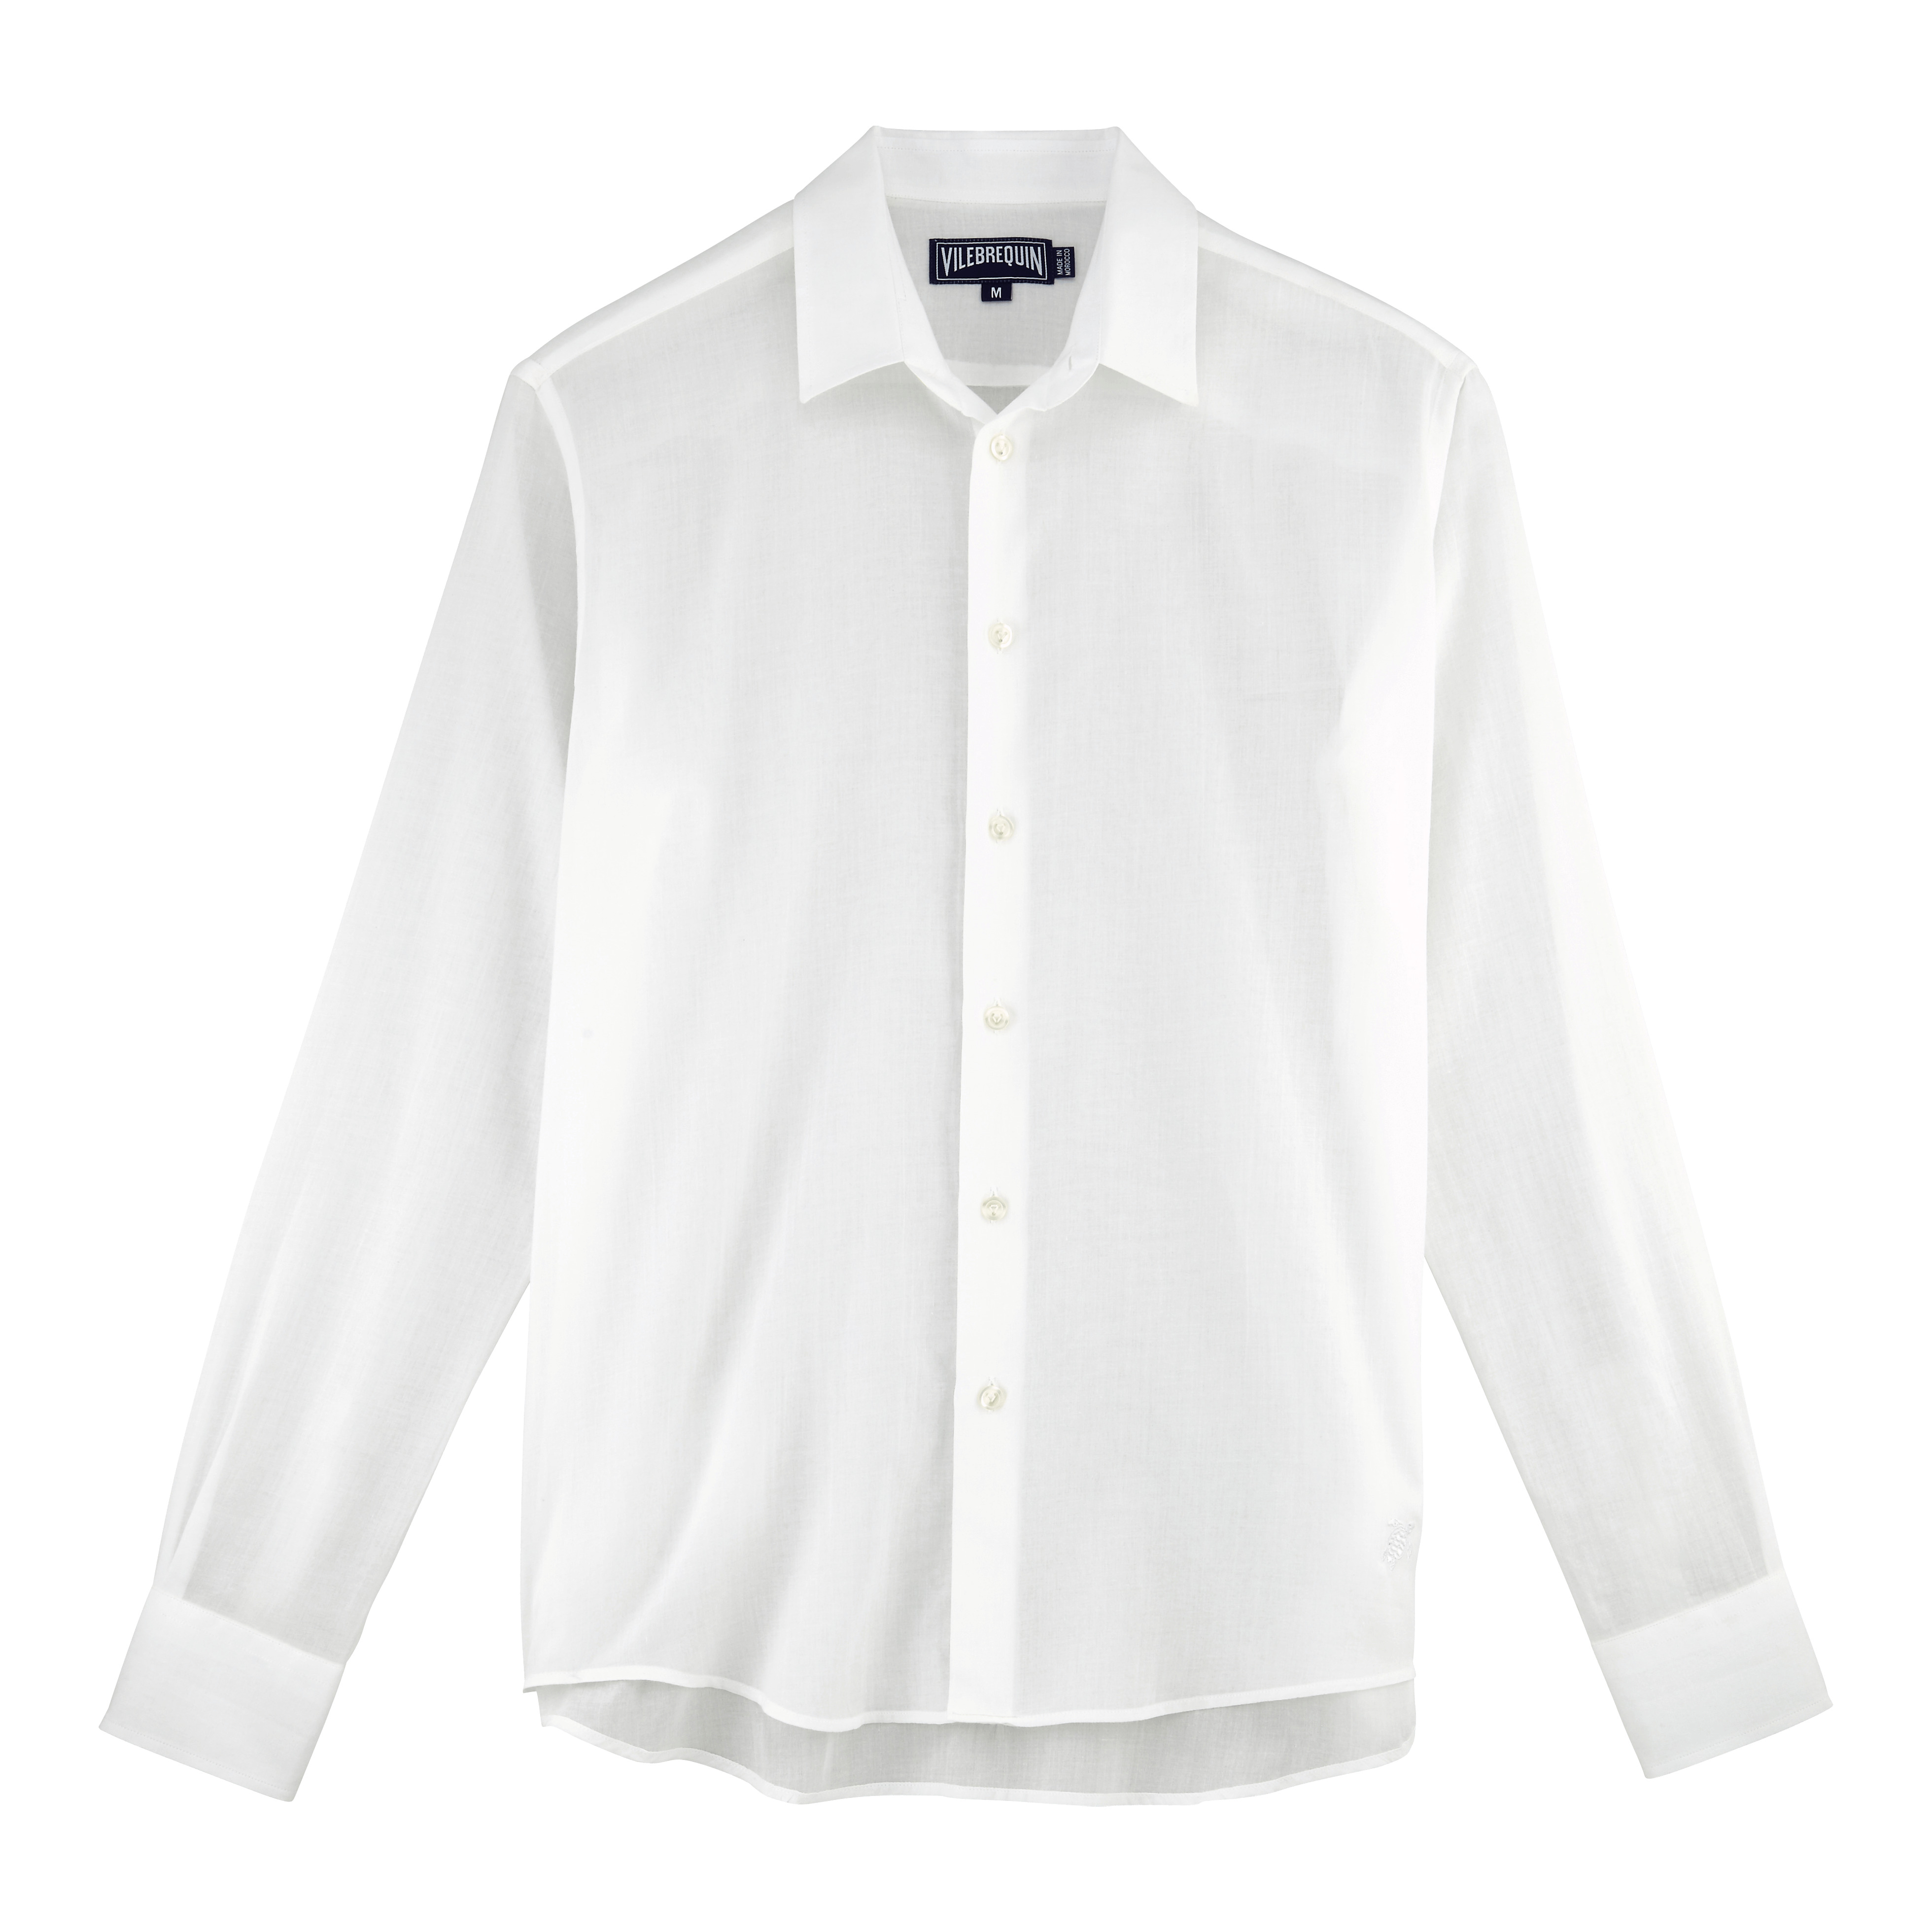 Unisex Cotton Voile Lightweight Shirt Solid - 1